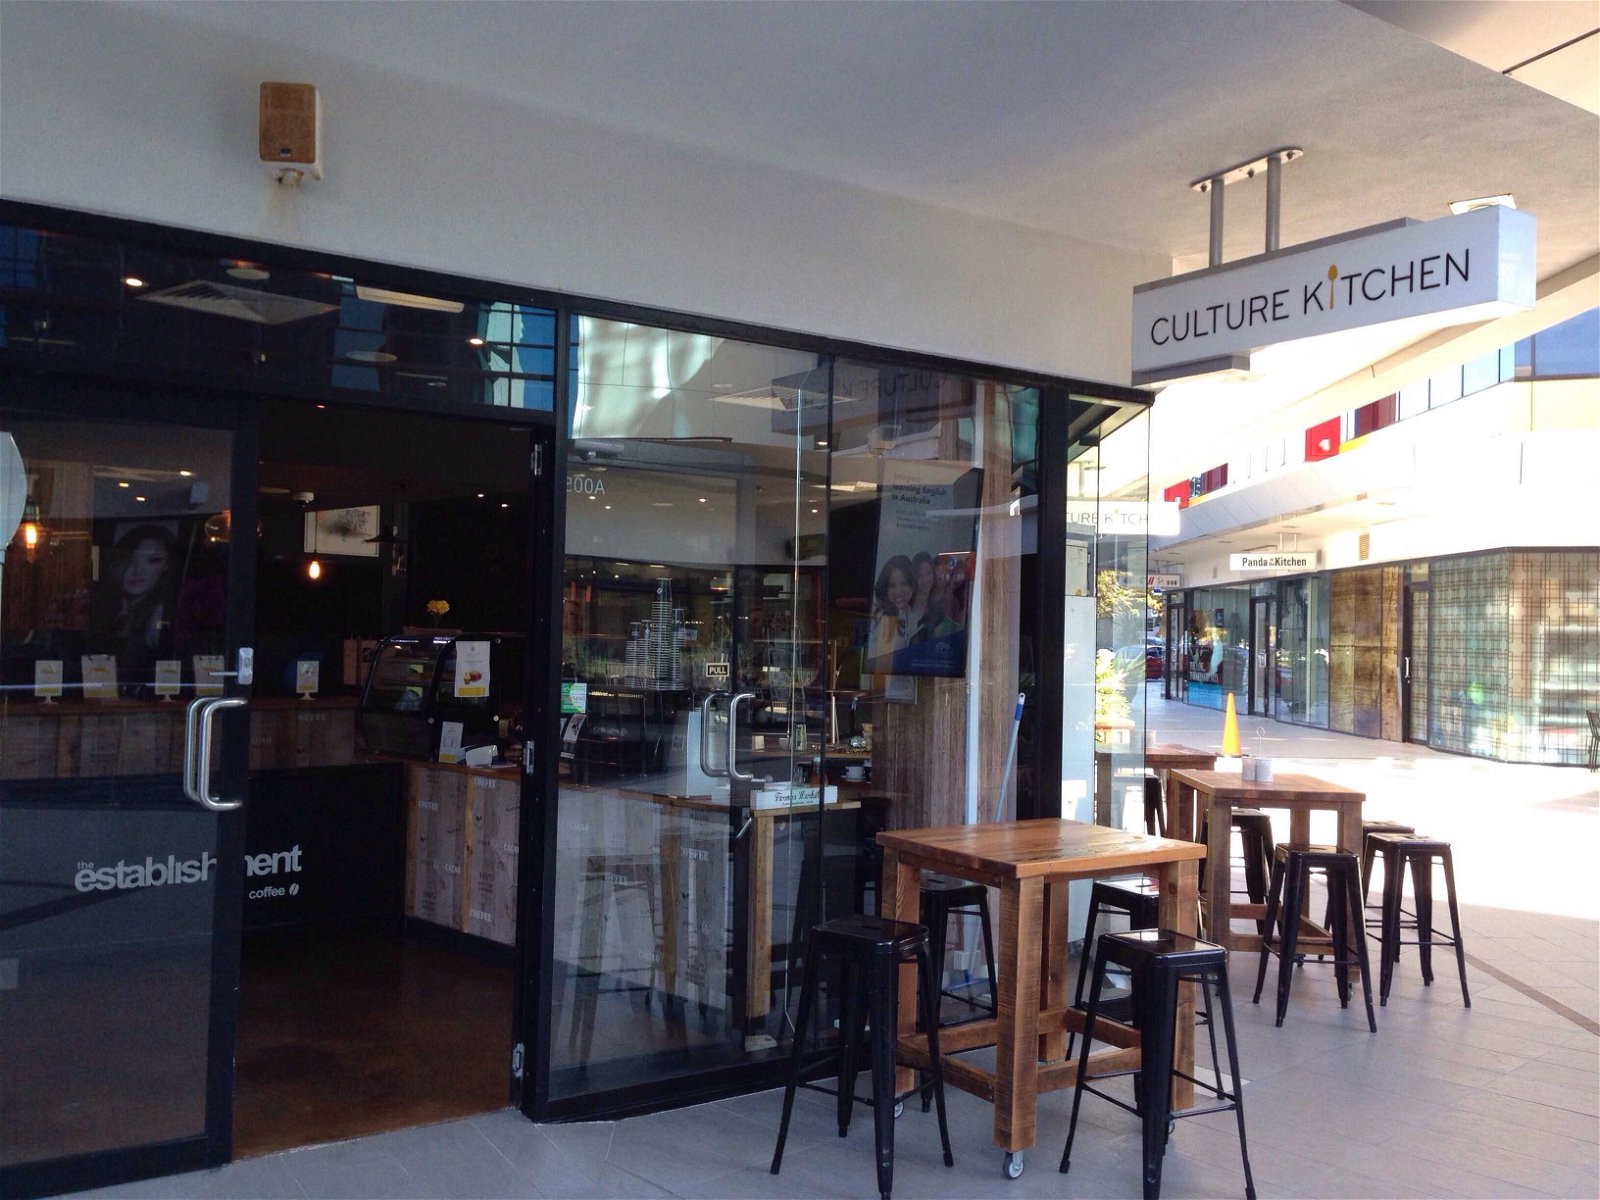 Culture Kitchen - Pubs Sydney